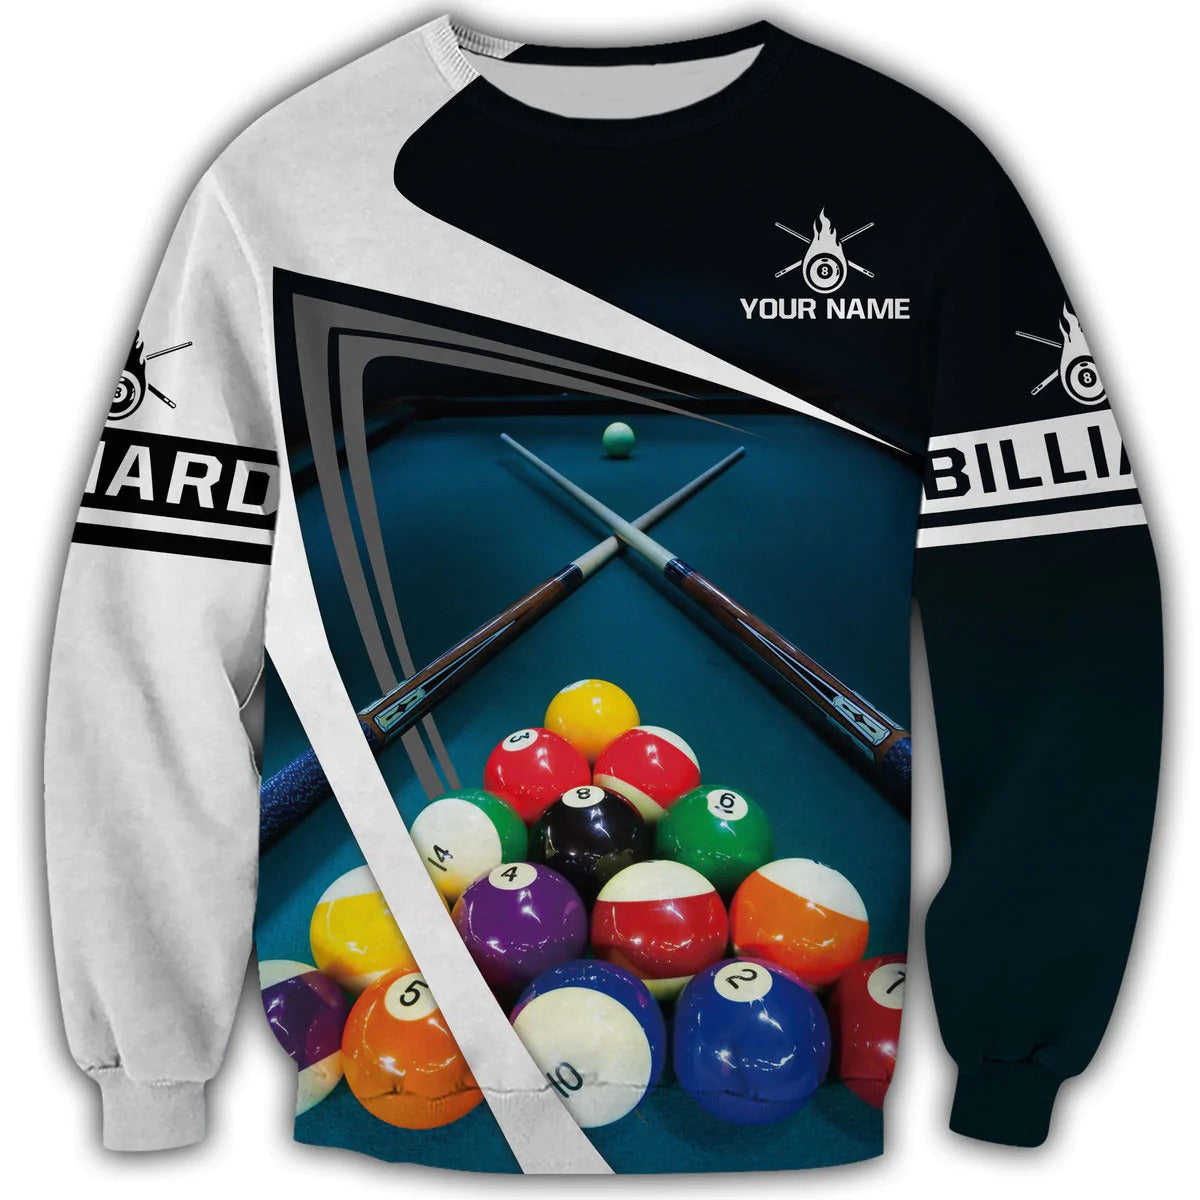 Personalized Name Billiard Shirt Men Women/ Billiard 3D Hoodie/ Billiard Team Uniform/ Billiard Lover Gift